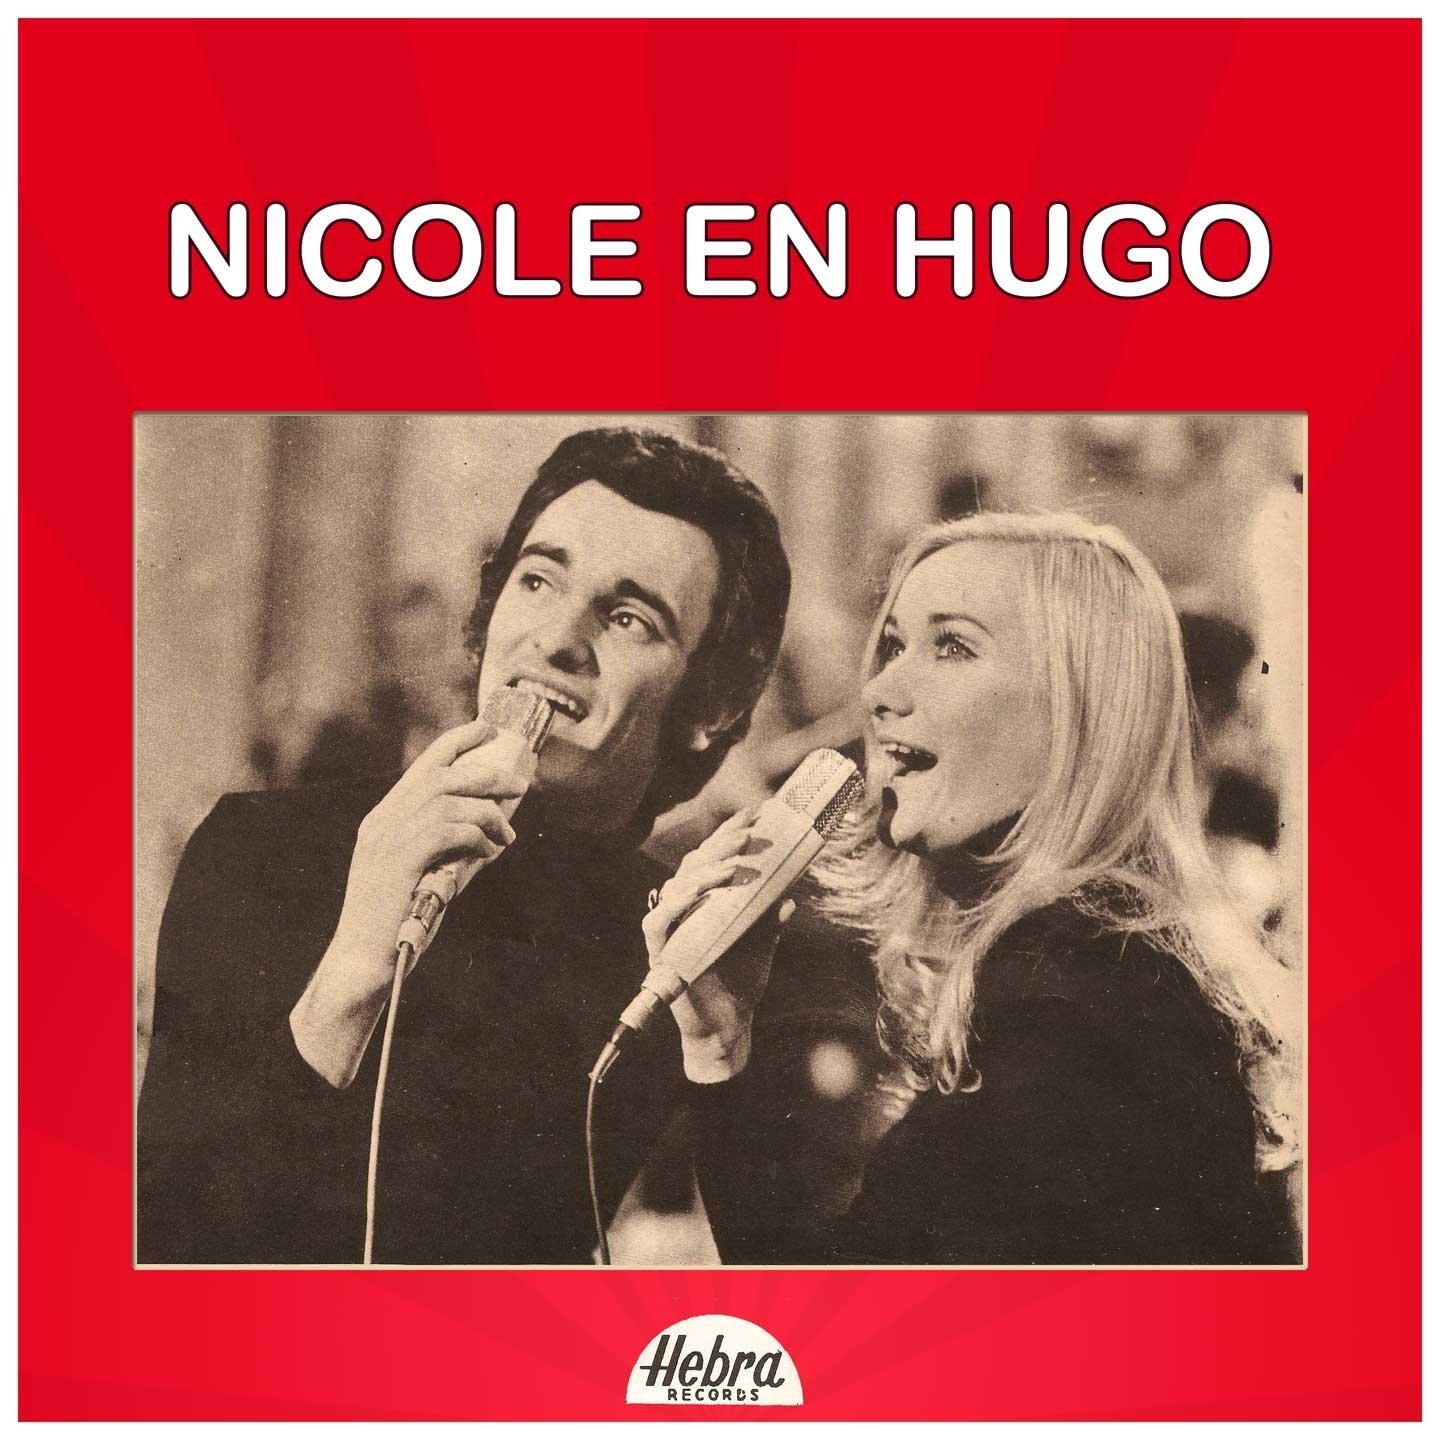 Nicole hugo morgen. Morgen 1971. Nicole & Hugo. Nicole Hugo Goeiemorgen. Nicole & Hugo бельгийский дуэт.